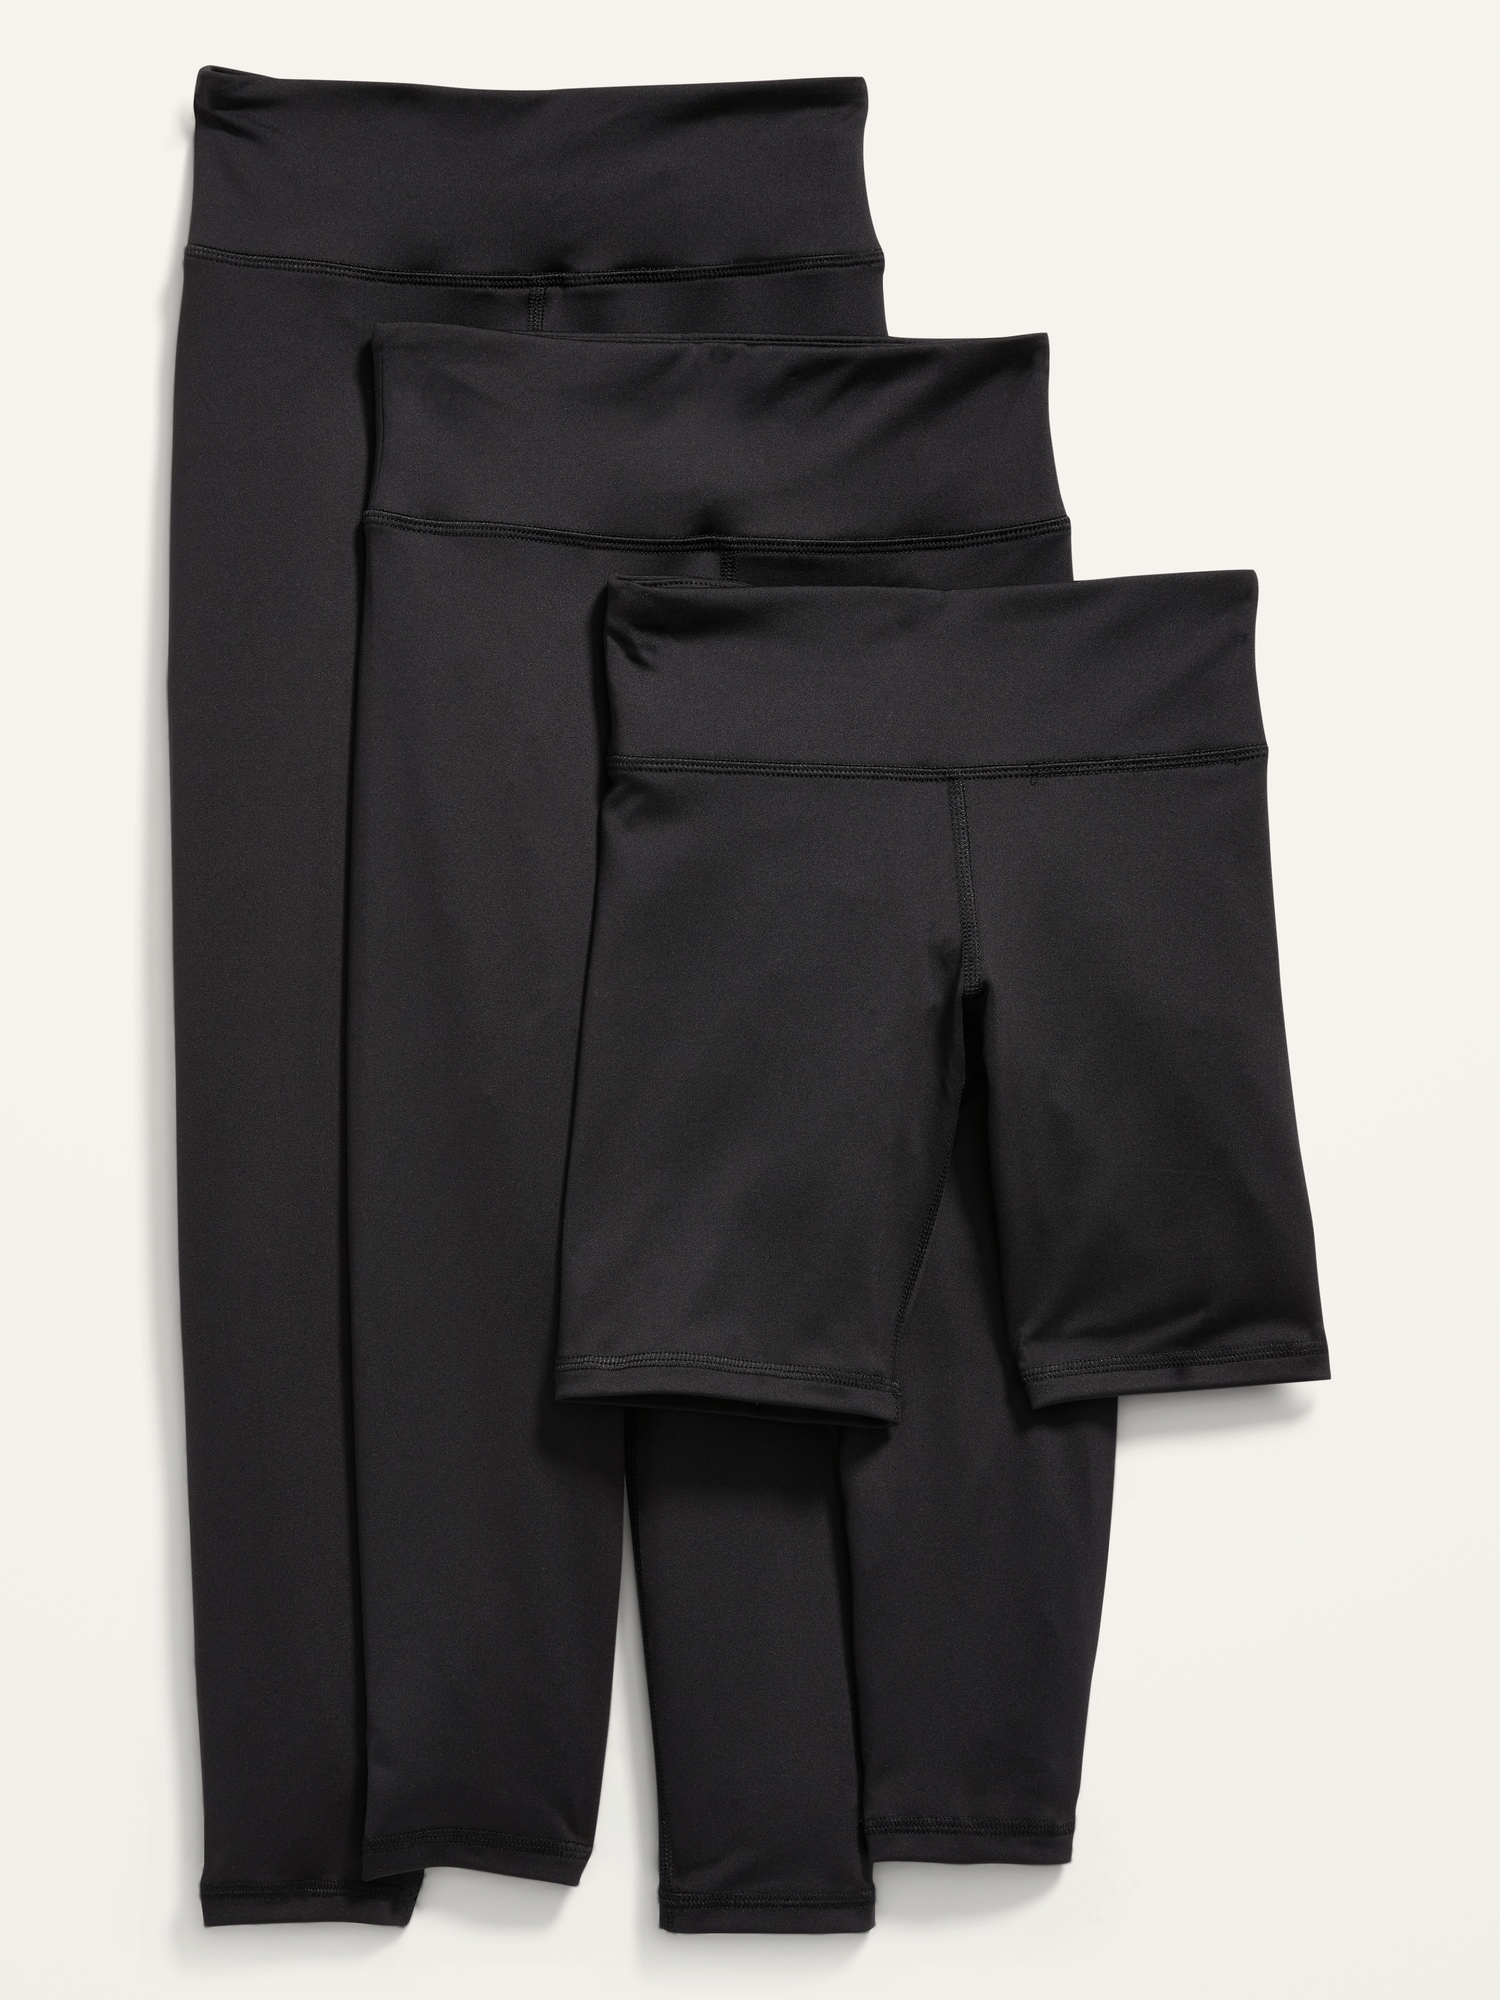 Old Navy PowerPress Leggings & Biker Shorts Variety 3-Pack for Girls black. 1